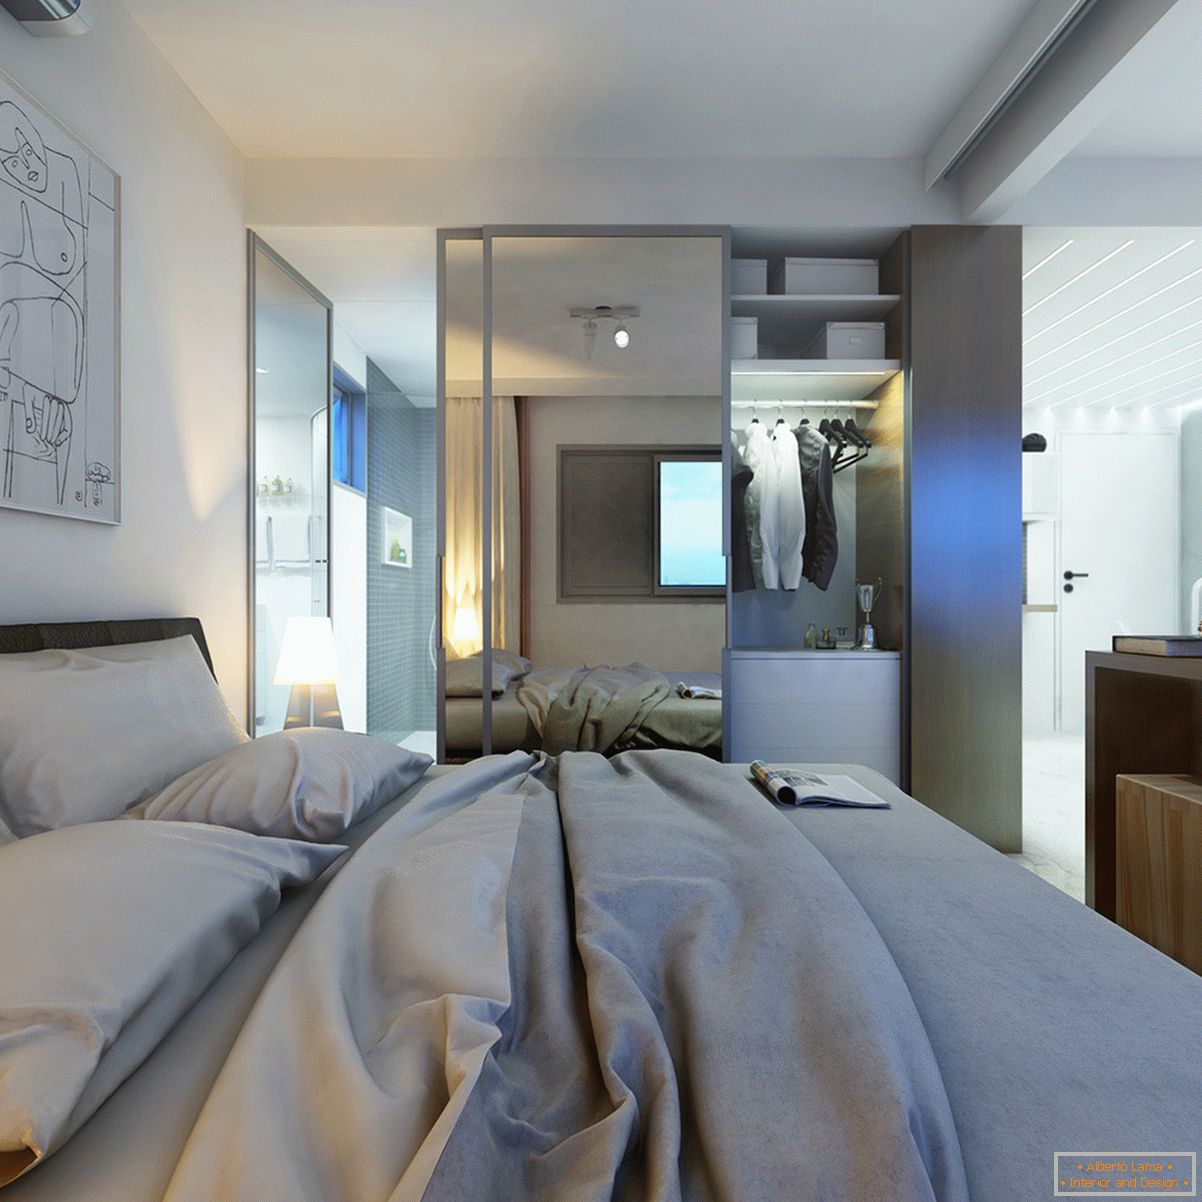 Design eines winzigen Schlafzimmers in Pastellfarben